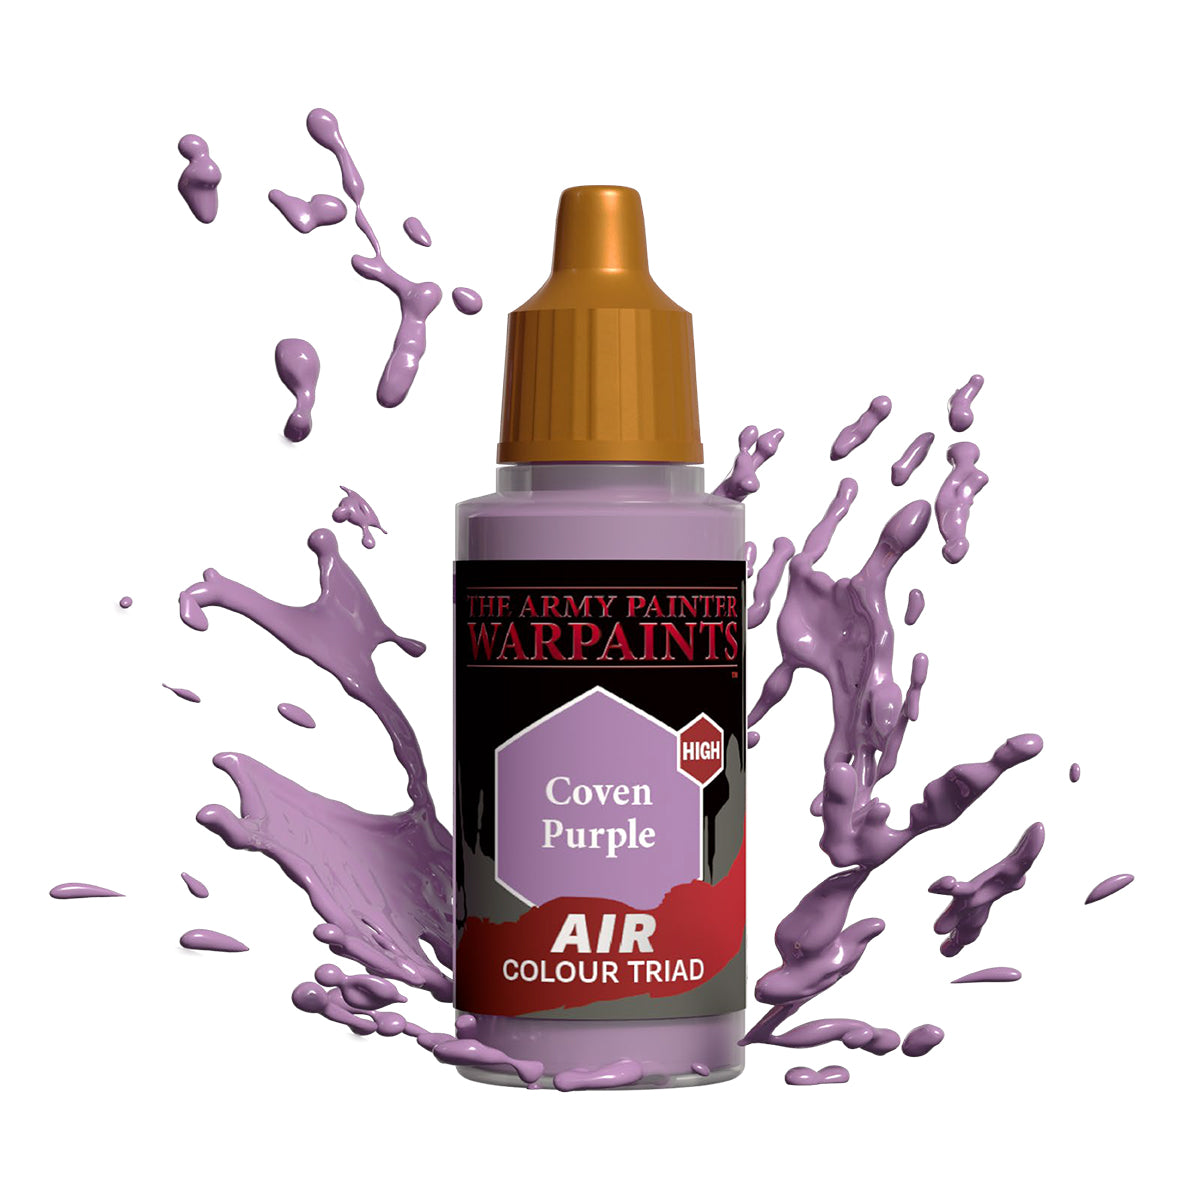 Warpaints Air: Coven Purple